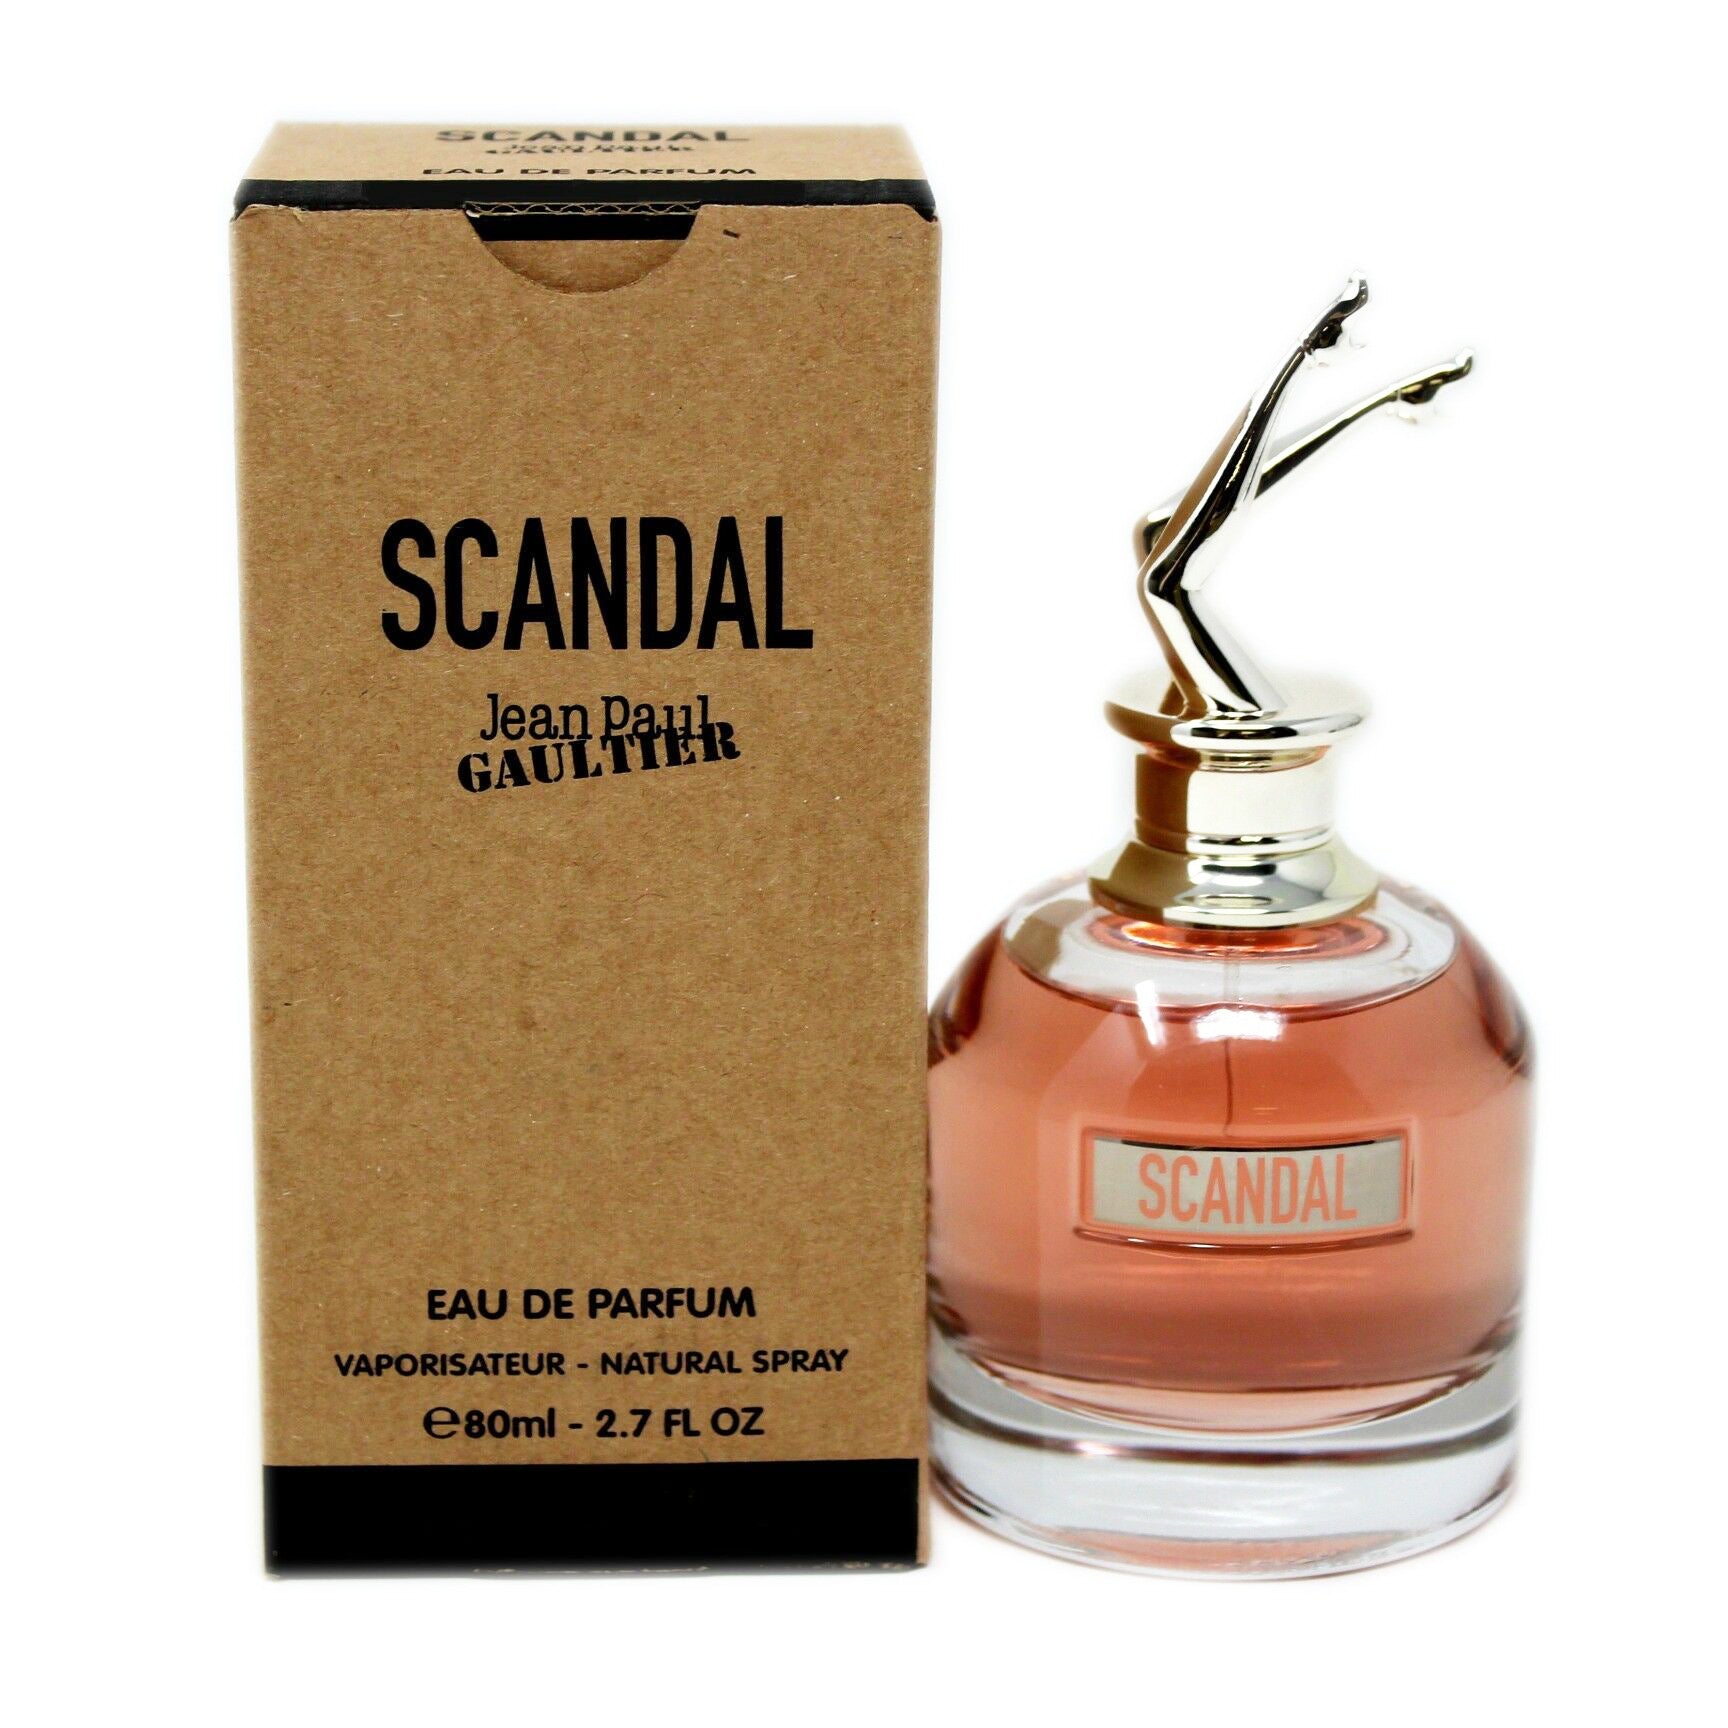 Jean Paul Gaultier Women's Scandal Eau de Parfum Spray - 2.7 oz bottle